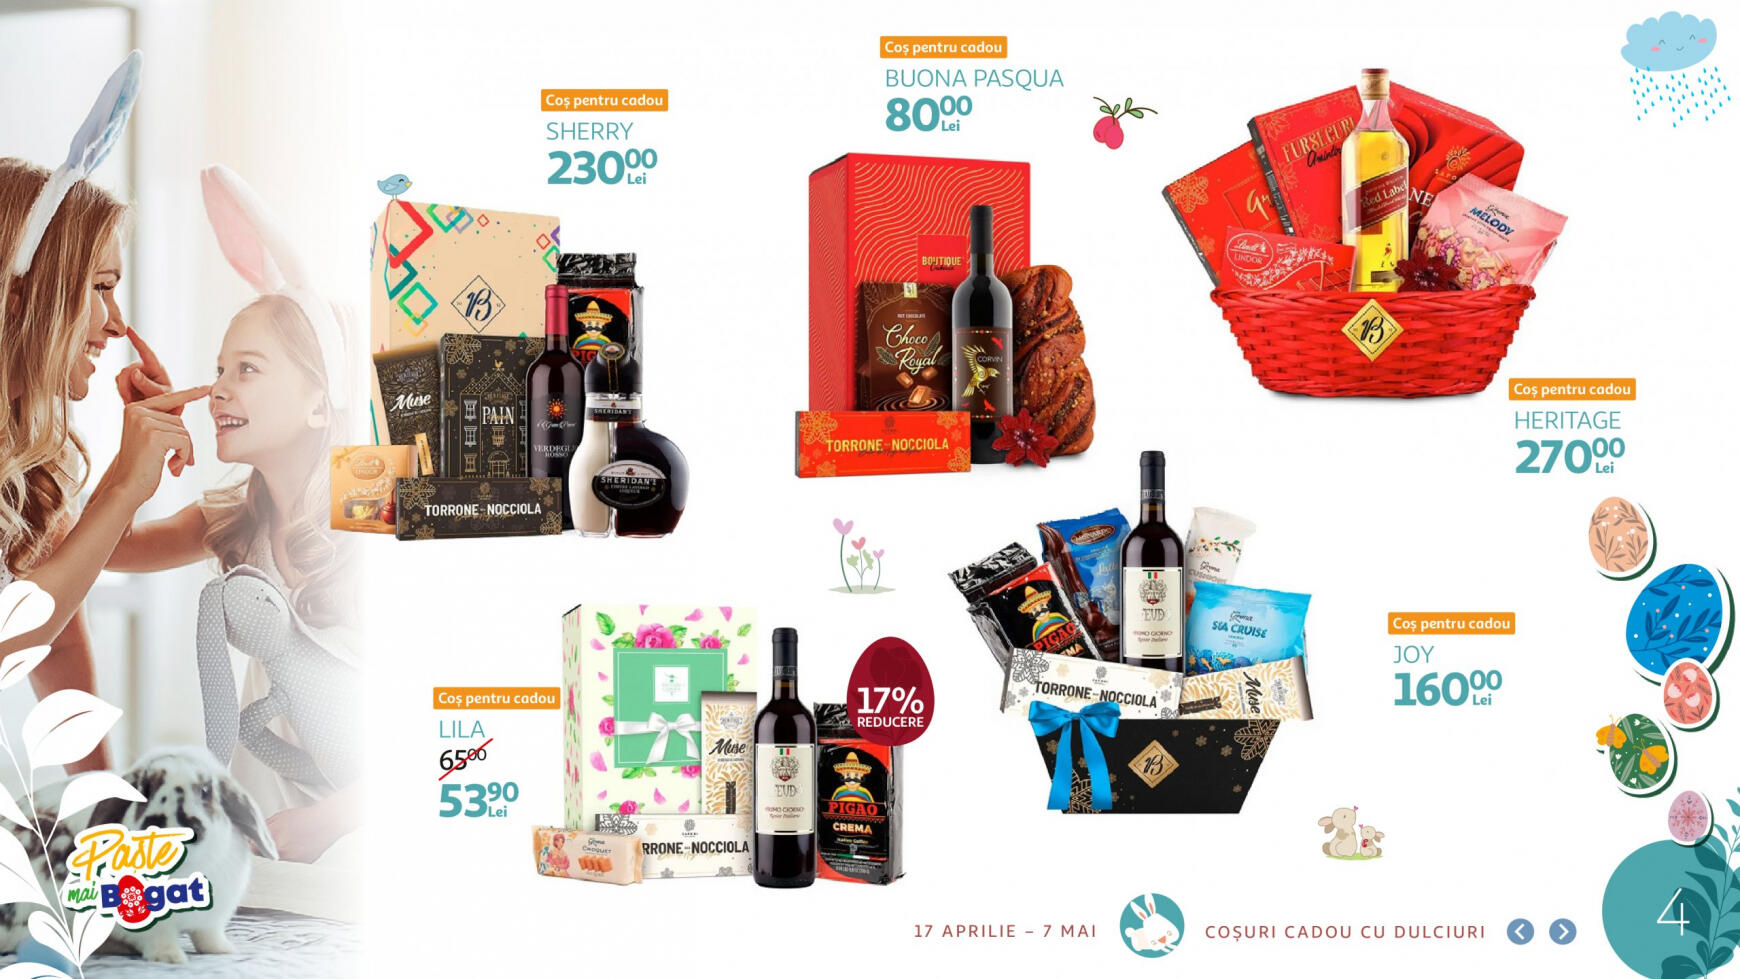 auchan - Catalog nou Auchan - Catalogul cadourilor pentru Paște 17.04. - 07.05. - page: 4